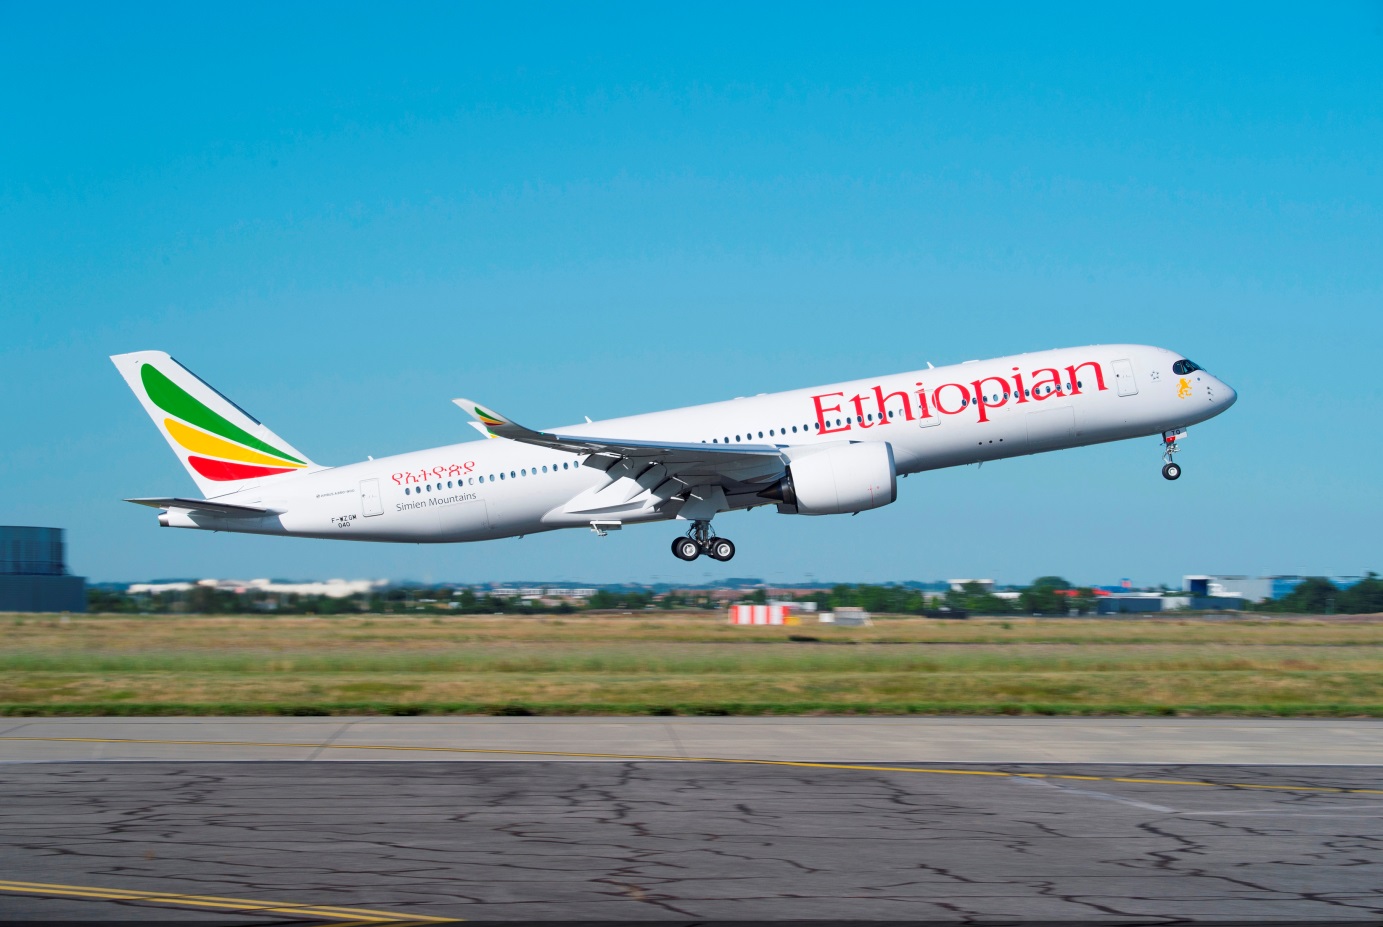 A Ethiopian Airlines tem voos para mais de 110 destinos no mundo